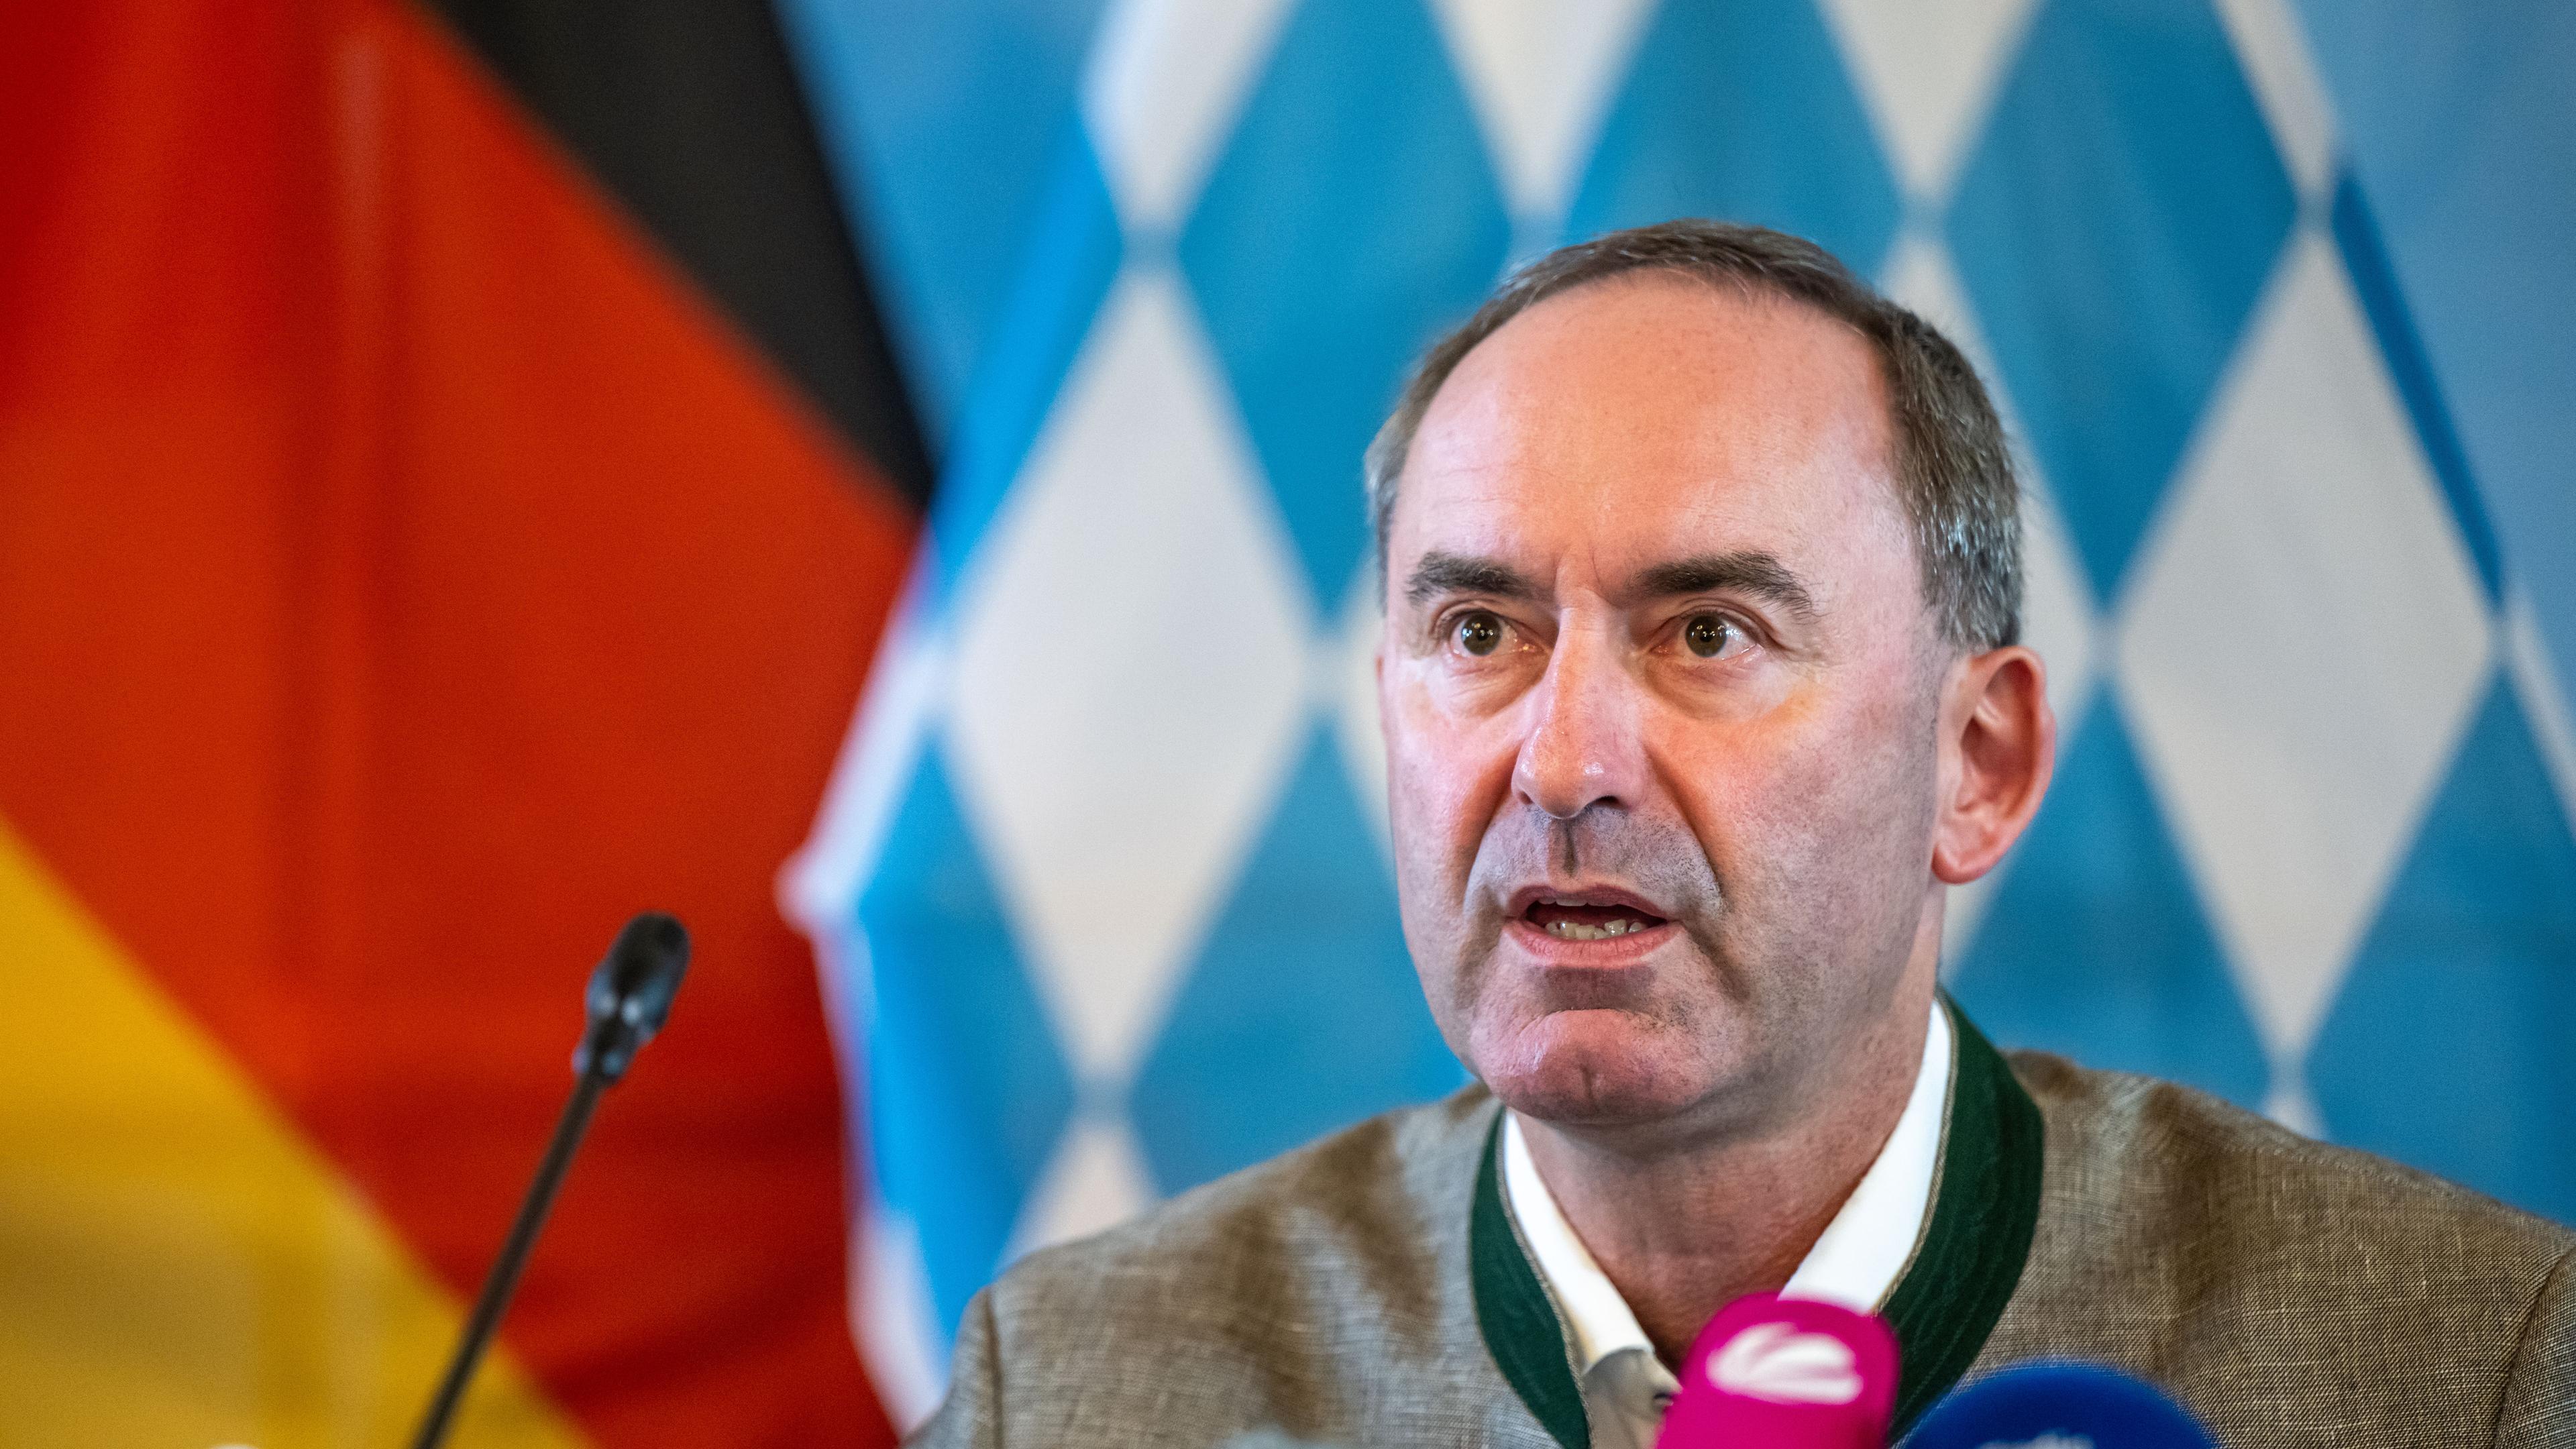 31.08.23, München: Hubert Aiwanger spricht vor Mikrofonen auf einer Pressekonferenz.